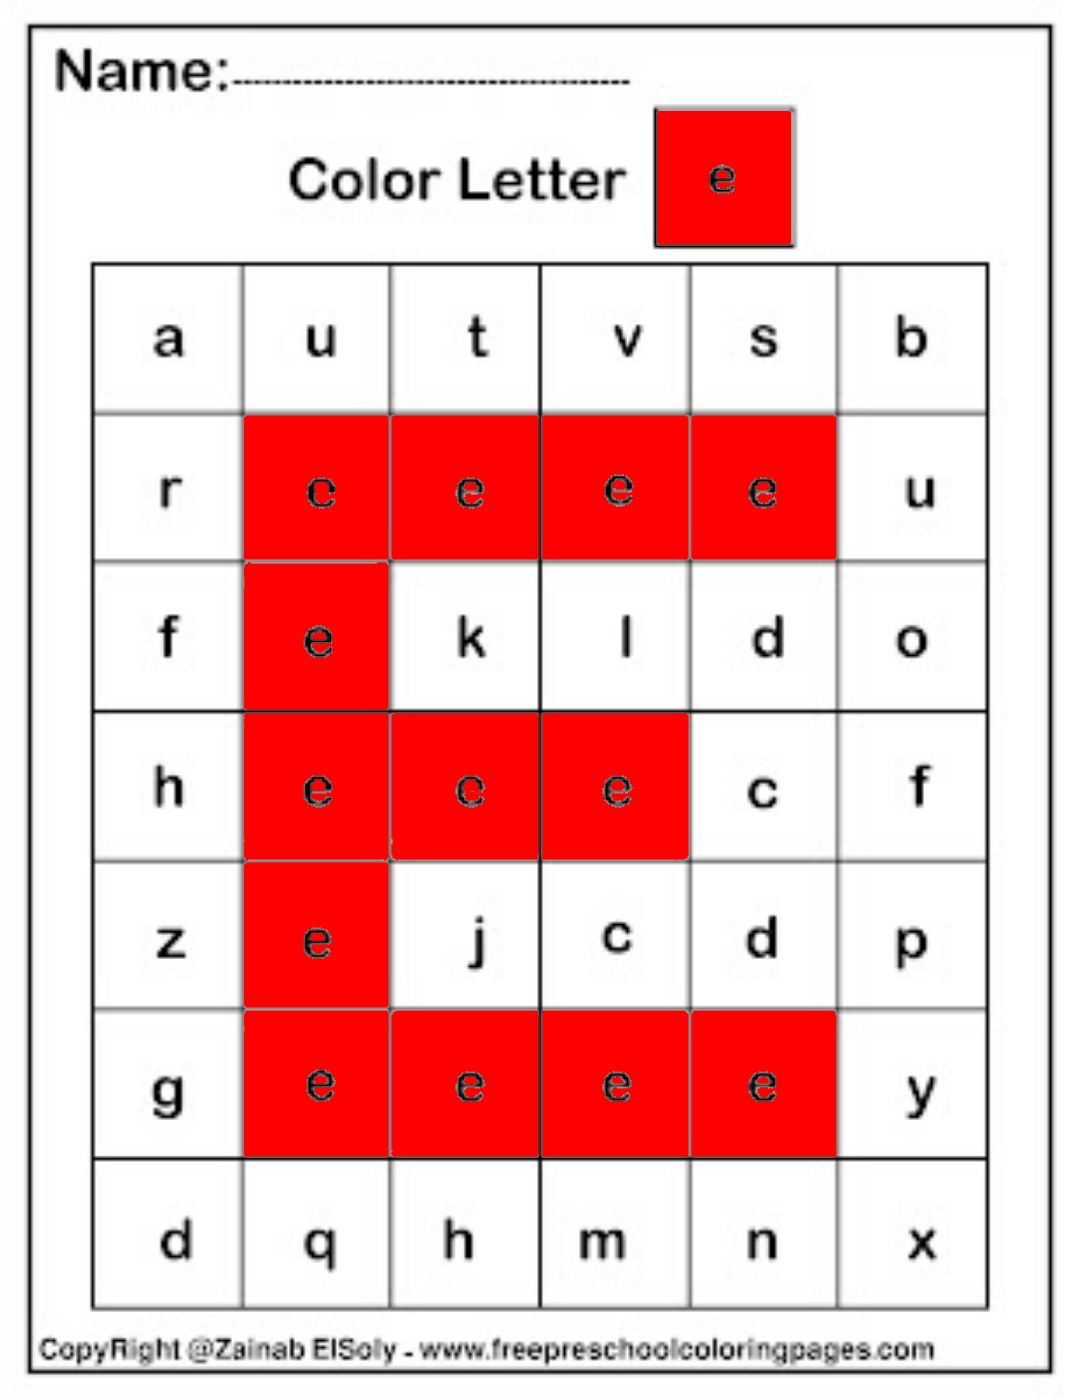  Color da Letter e Square Pïxels Free Preschool